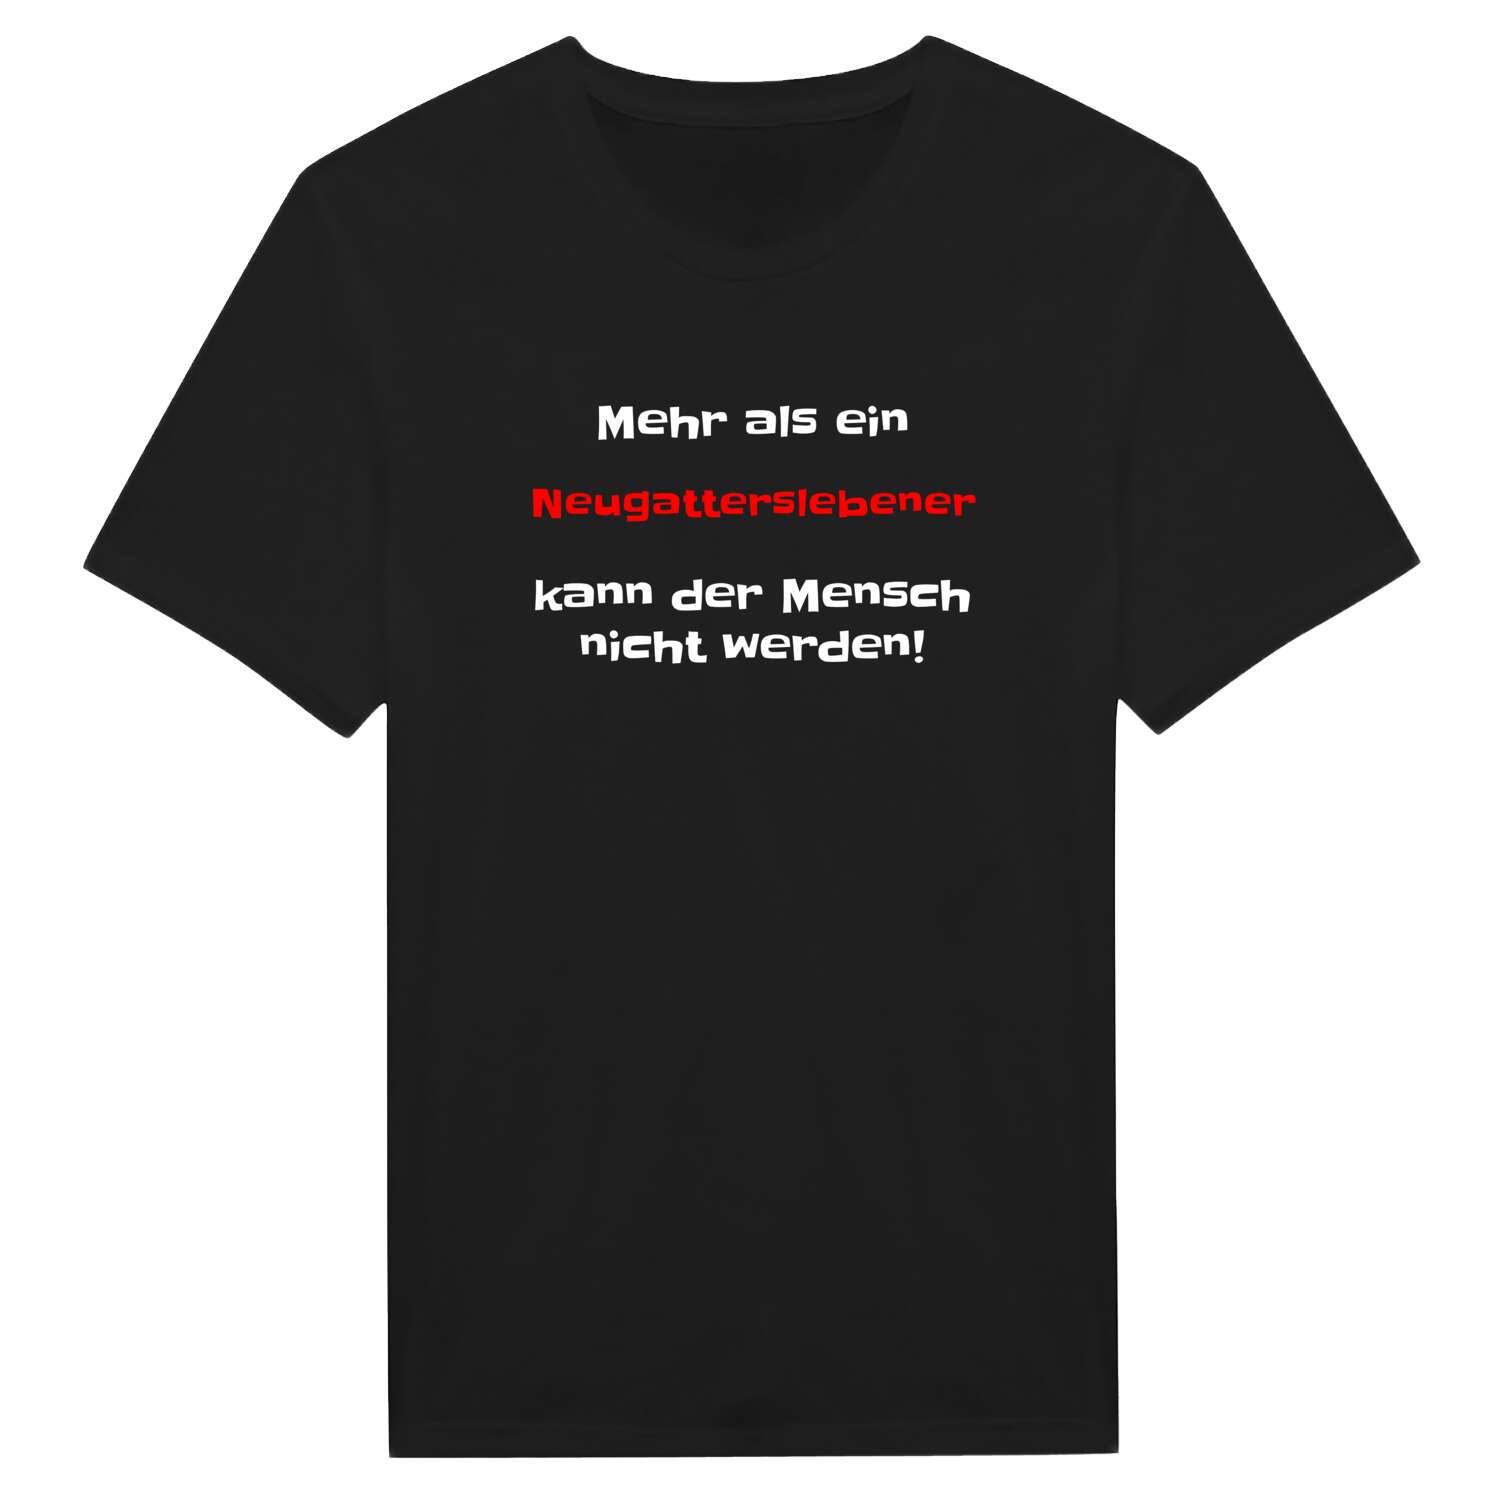 Neugattersleben T-Shirt »Mehr als ein«